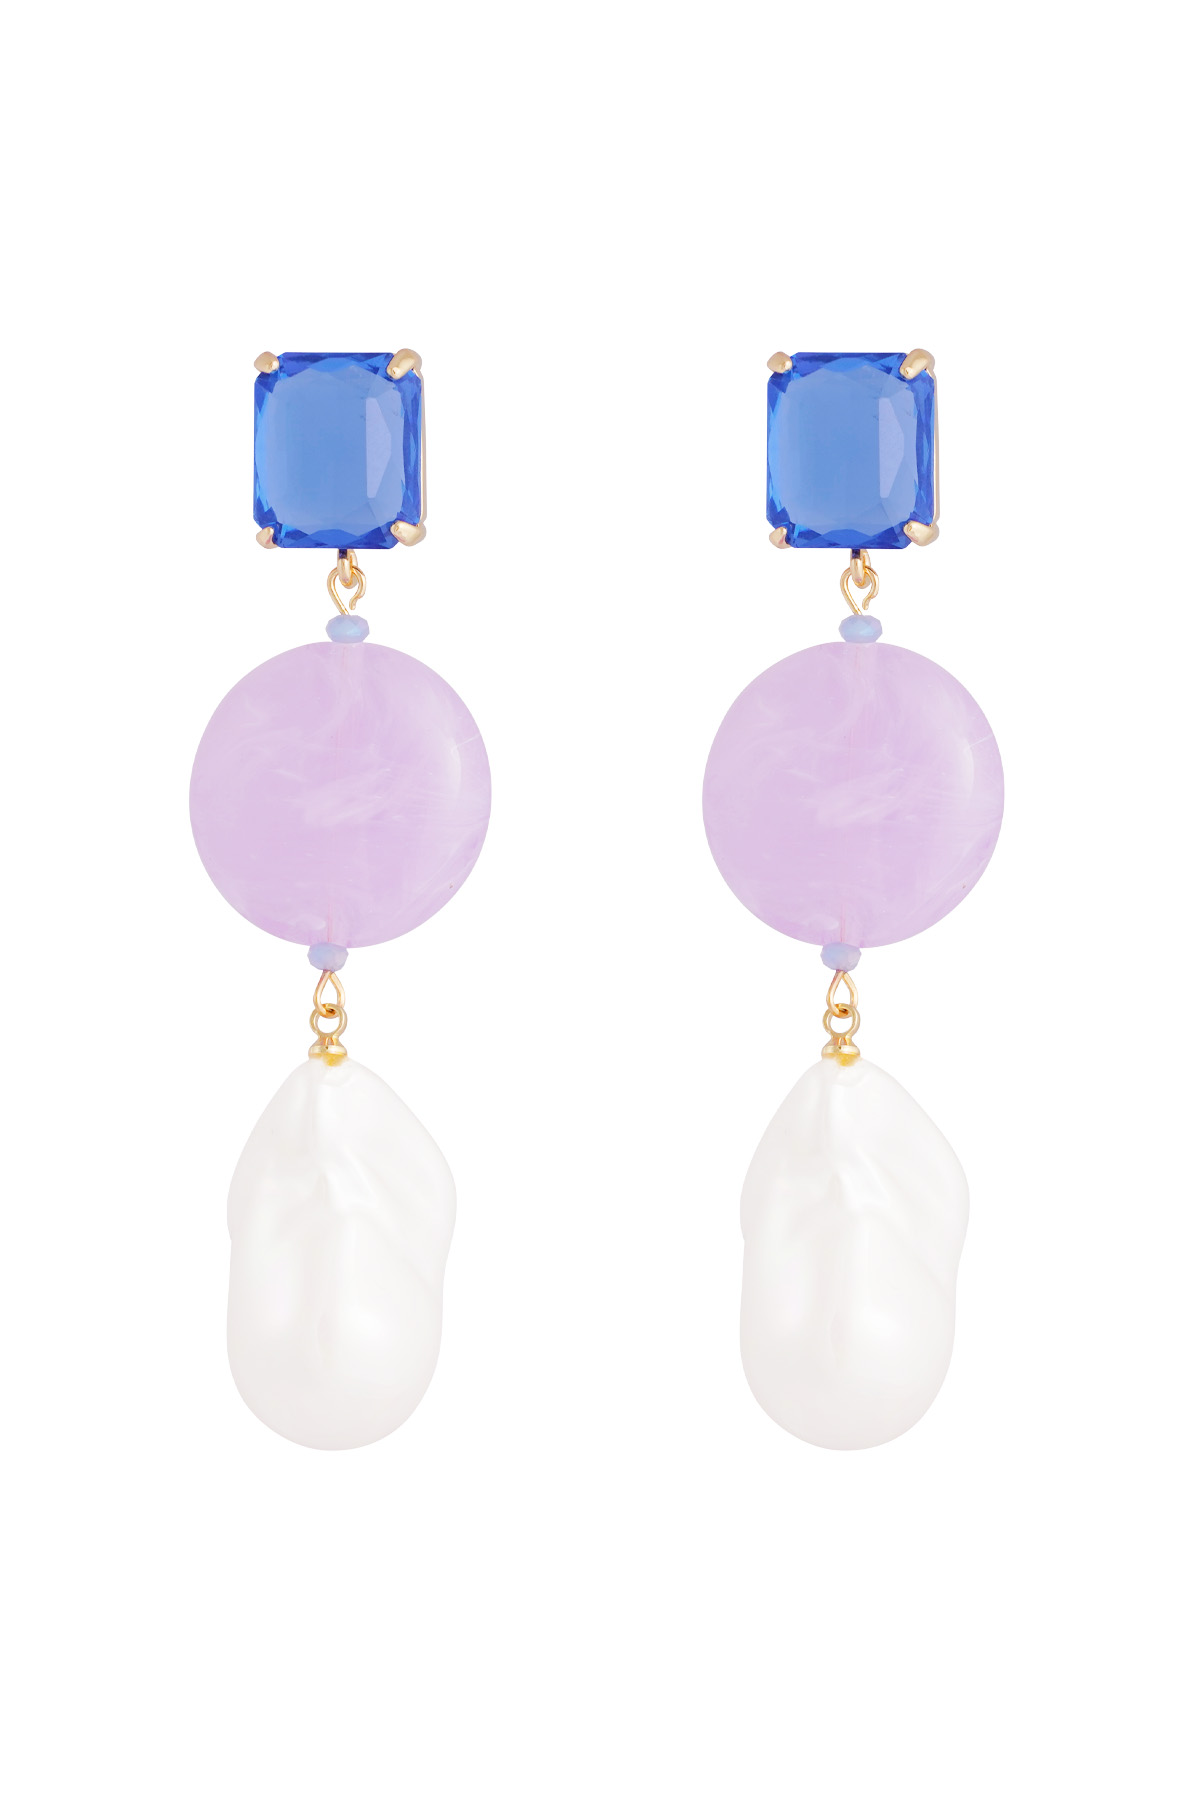 Ohrringe Vintage-Perlen - blau lila h5 